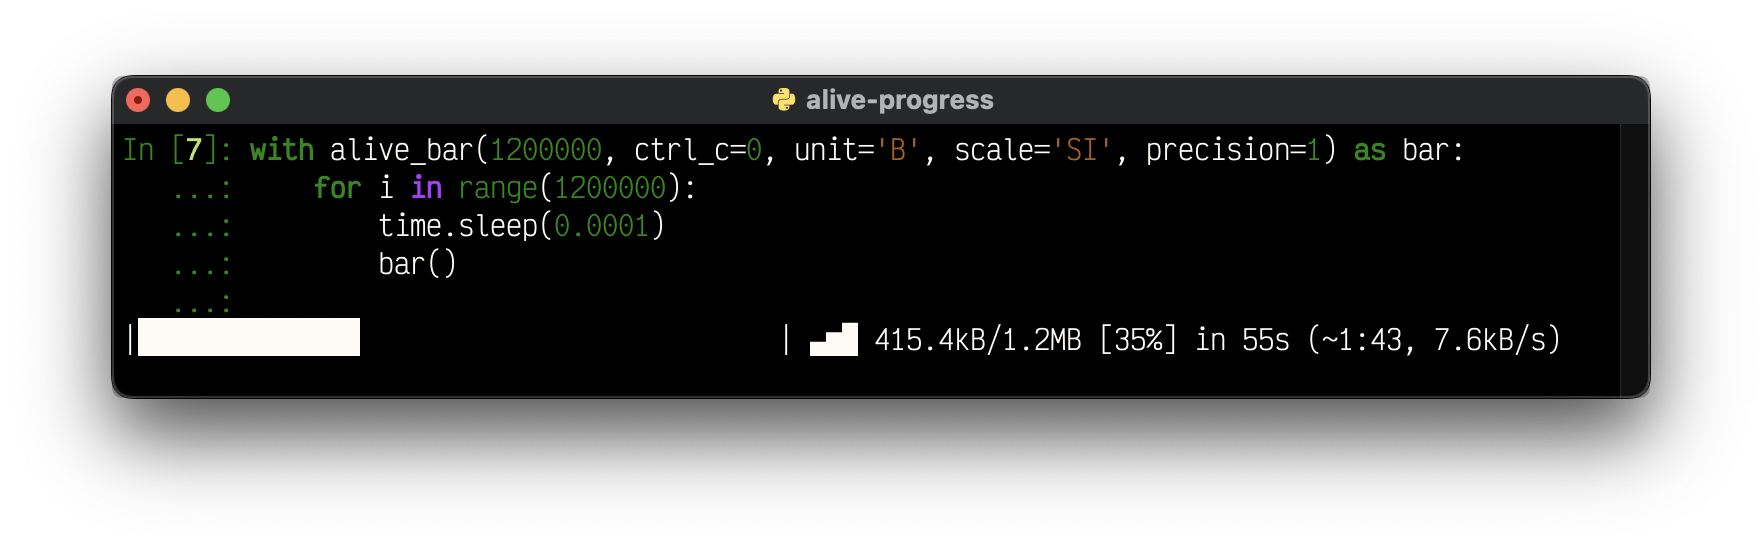 alive-progress 3.0